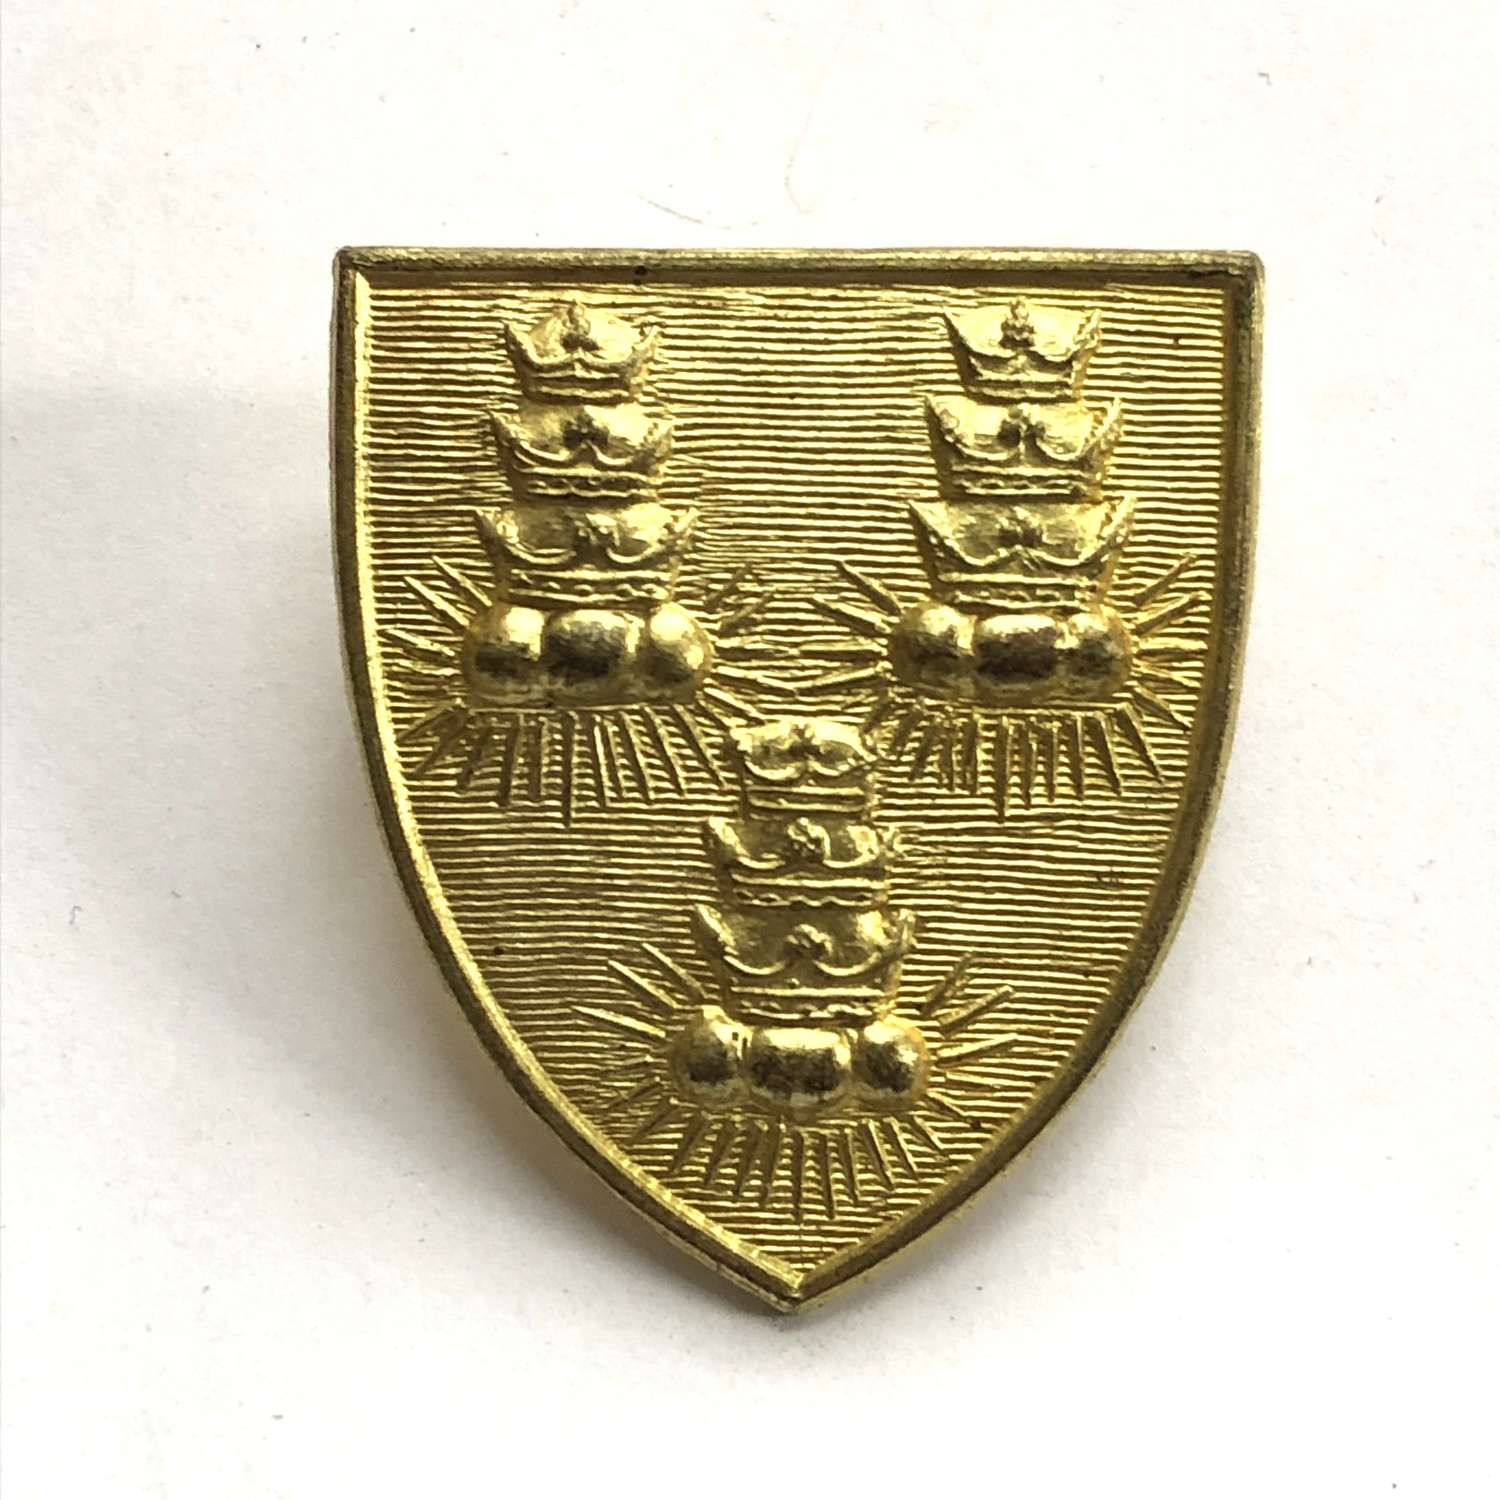 Bancroft's School OTC Woodford Green, London cap badge